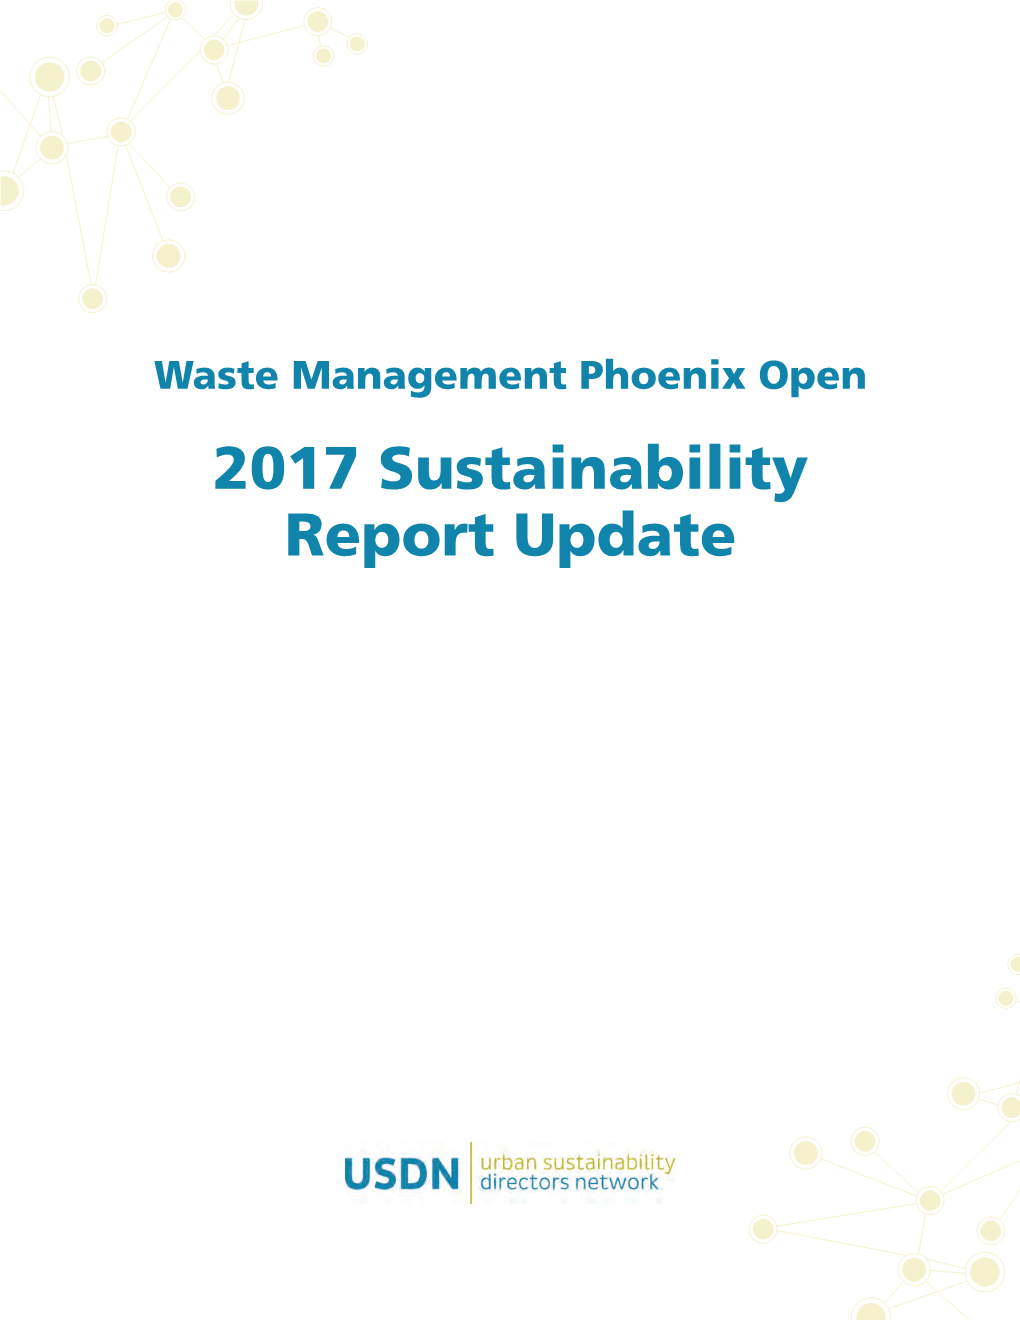 Waste Management Phoenix Open 2017 Sustainability Report Update WASTE MANAGEMENT PHOENIX OPEN 2017 SUSTAINABILITY REPORT UPDATE